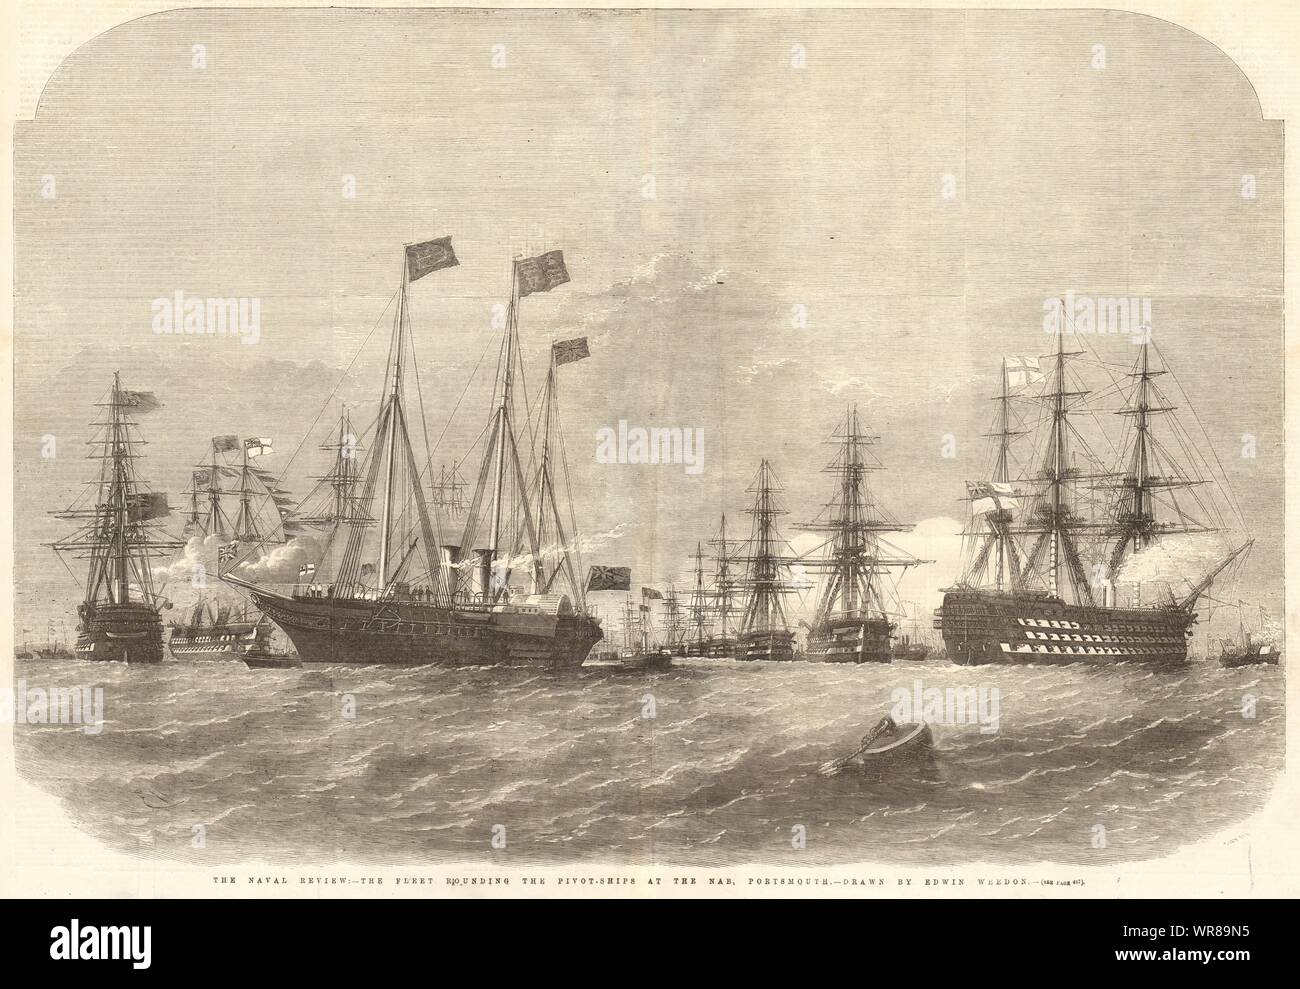 Die Naval Review: Die flotte Runden der Pivot-Schiffe auf der Nab, Portsmouth 1856 Stockfoto